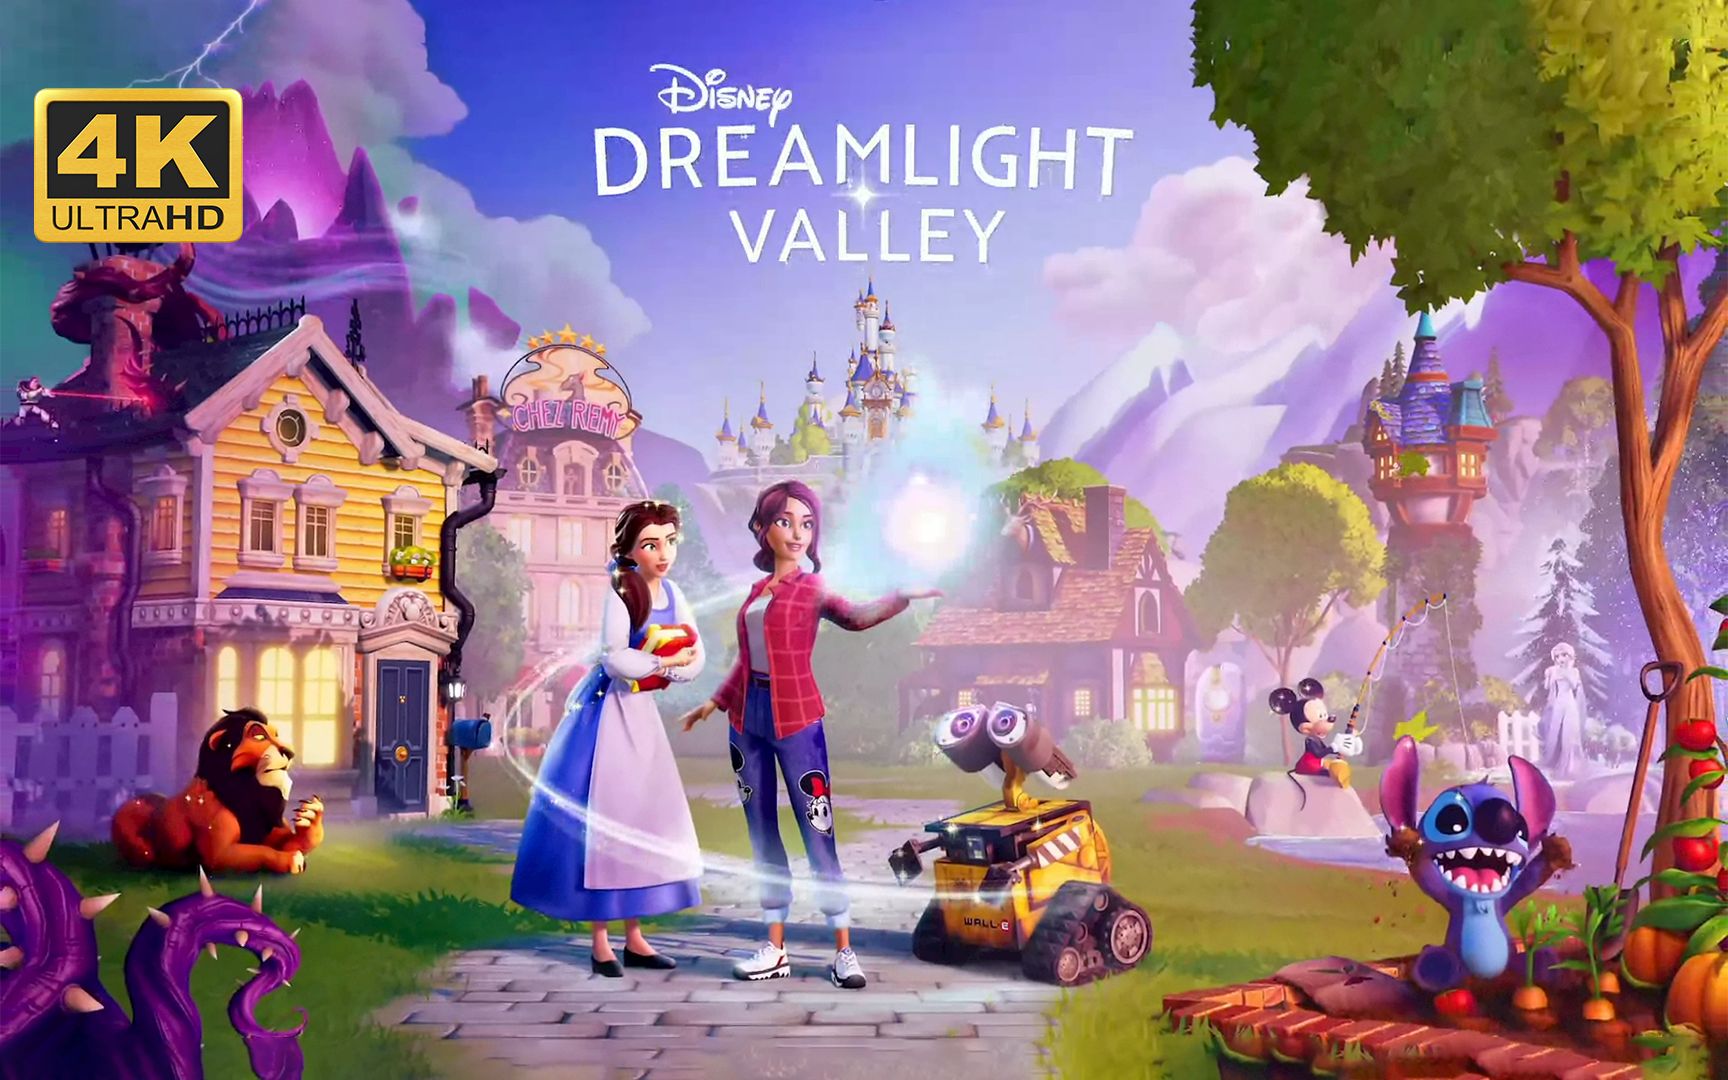 【迪士尼：梦幻星谷】4K 最高画质 全剧情流程通关攻略 迪士尼版动森 生活种田模拟游戏 - Disney Dreamlight Valley